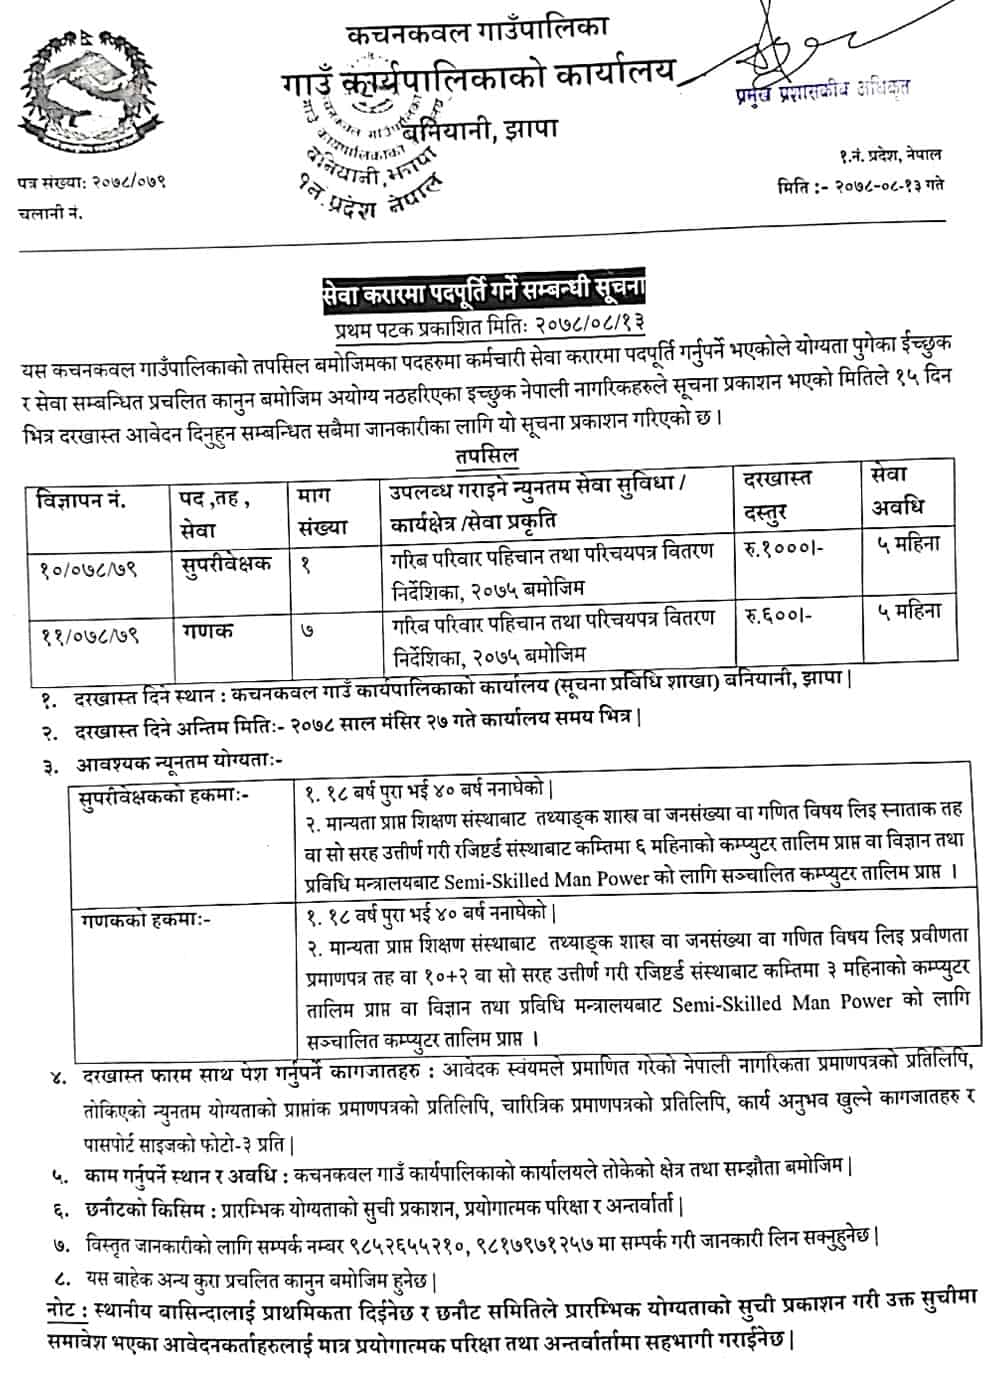 Kachankawal Rural Municipality Vacancy for Supervisor and Ganak